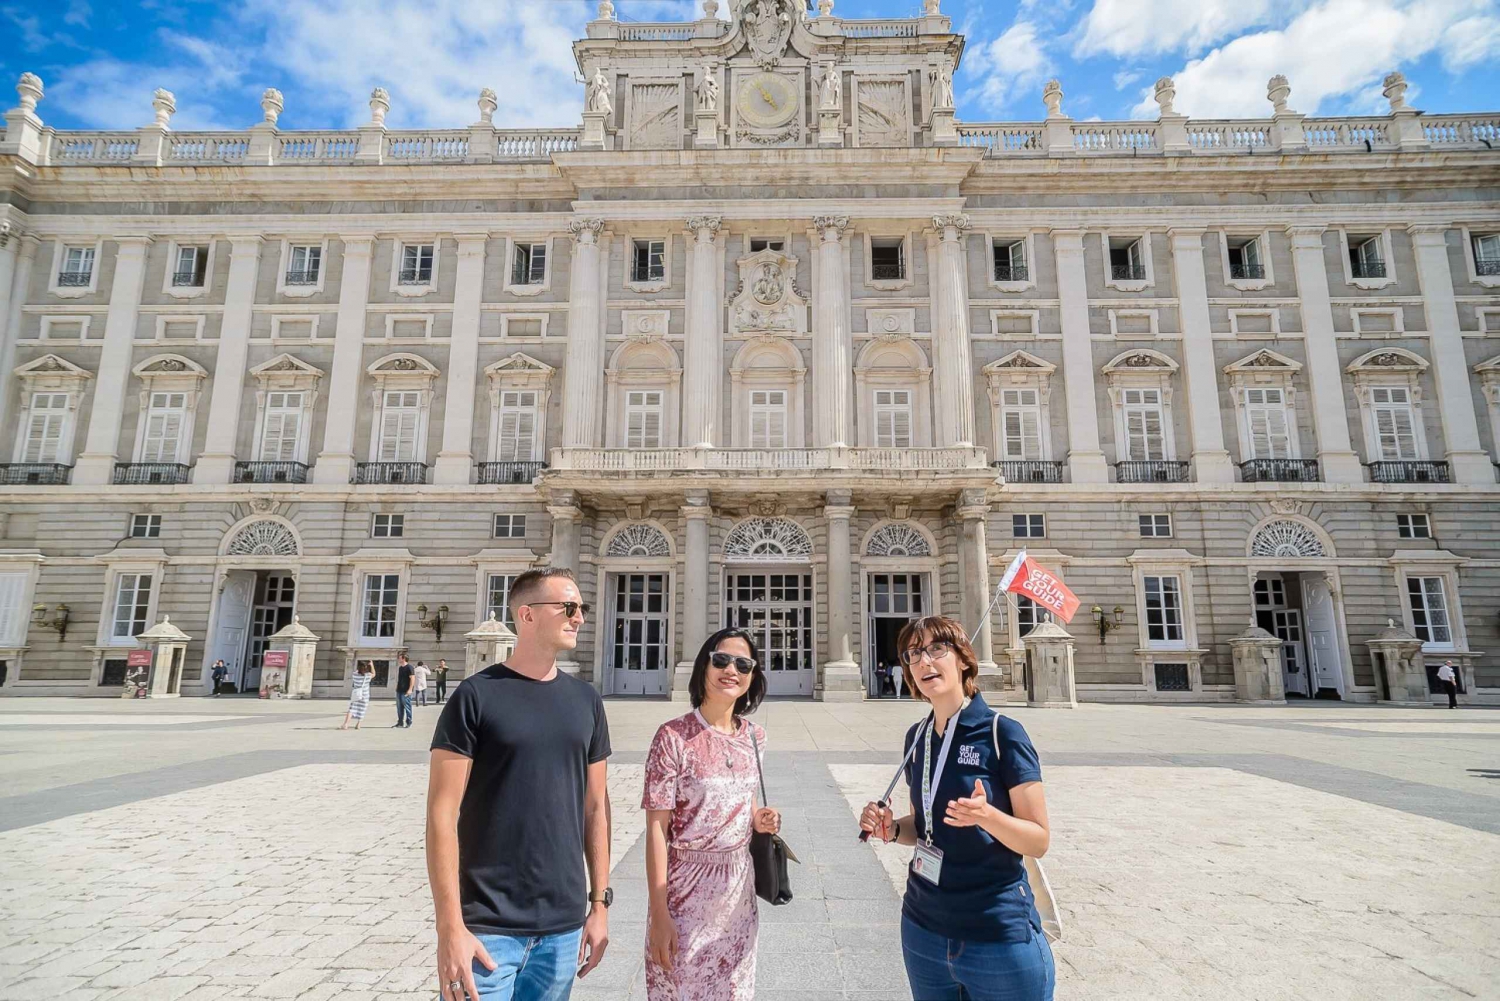 Madrid: Rondleiding Koninklijk Paleis met optionele koninklijke collecties